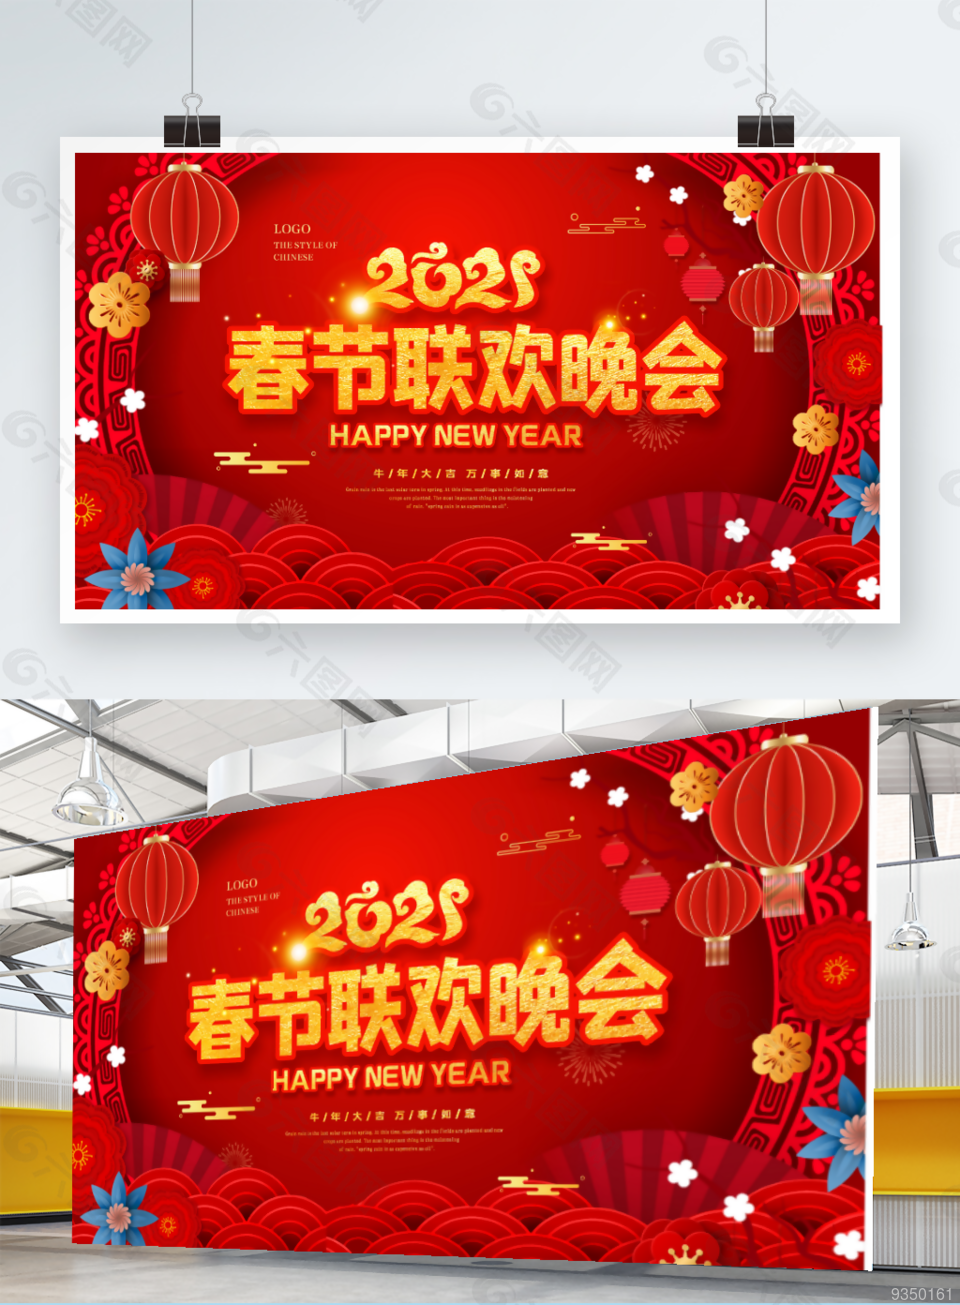 红色喜庆2021牛年春节联欢晚会背景展板